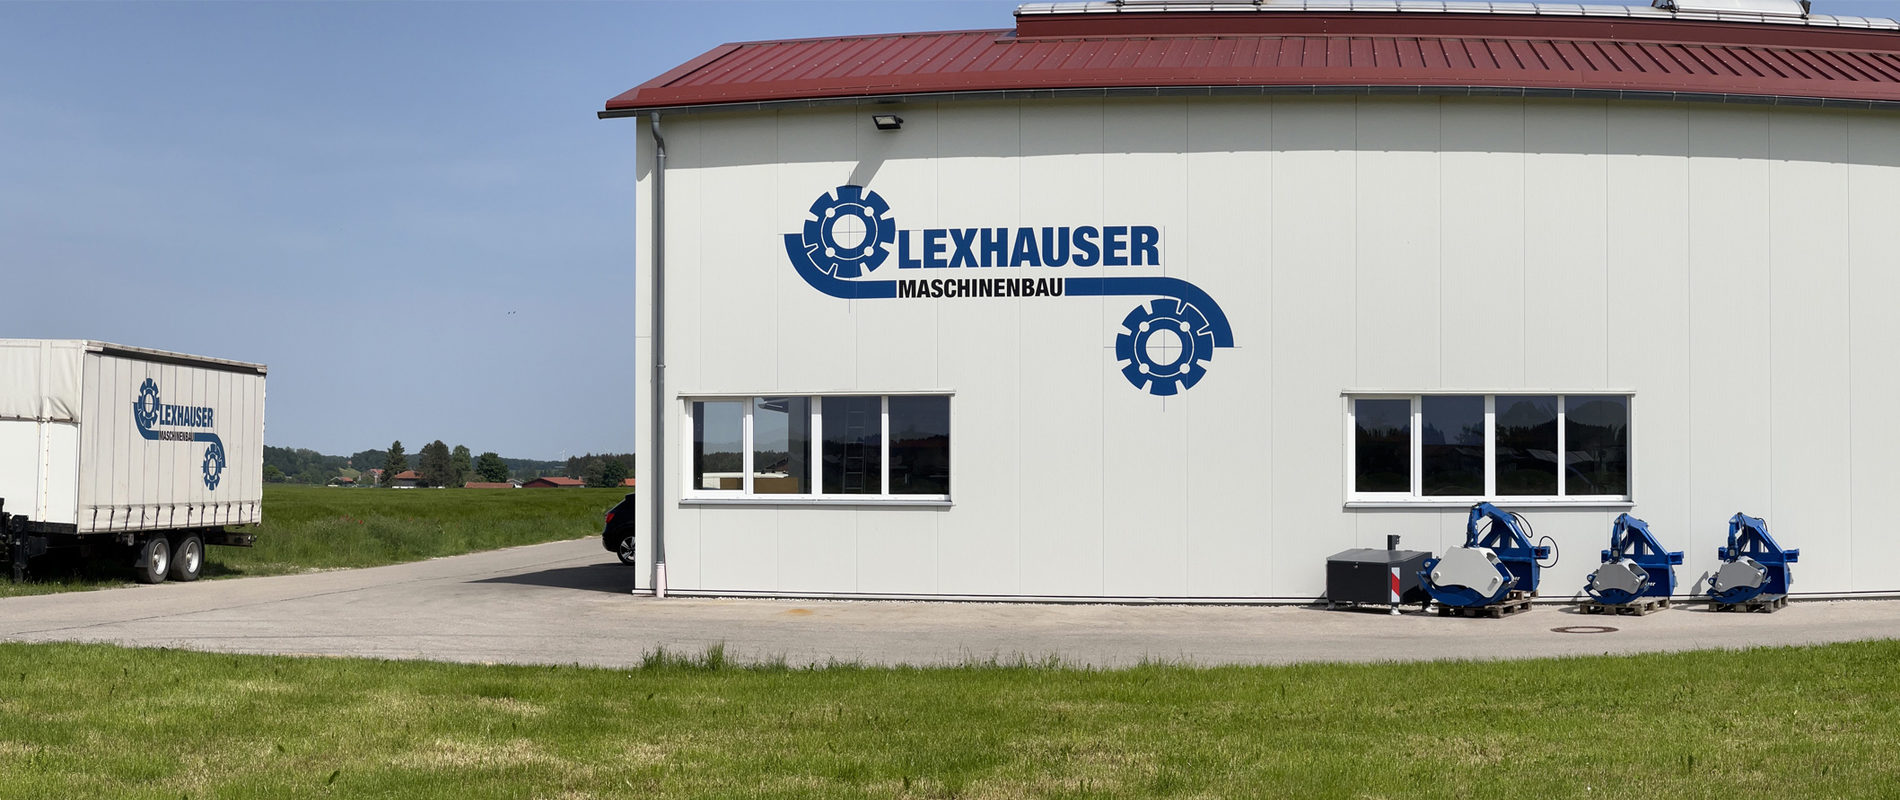 Lexhauser Maschinenbau - Unternehmen